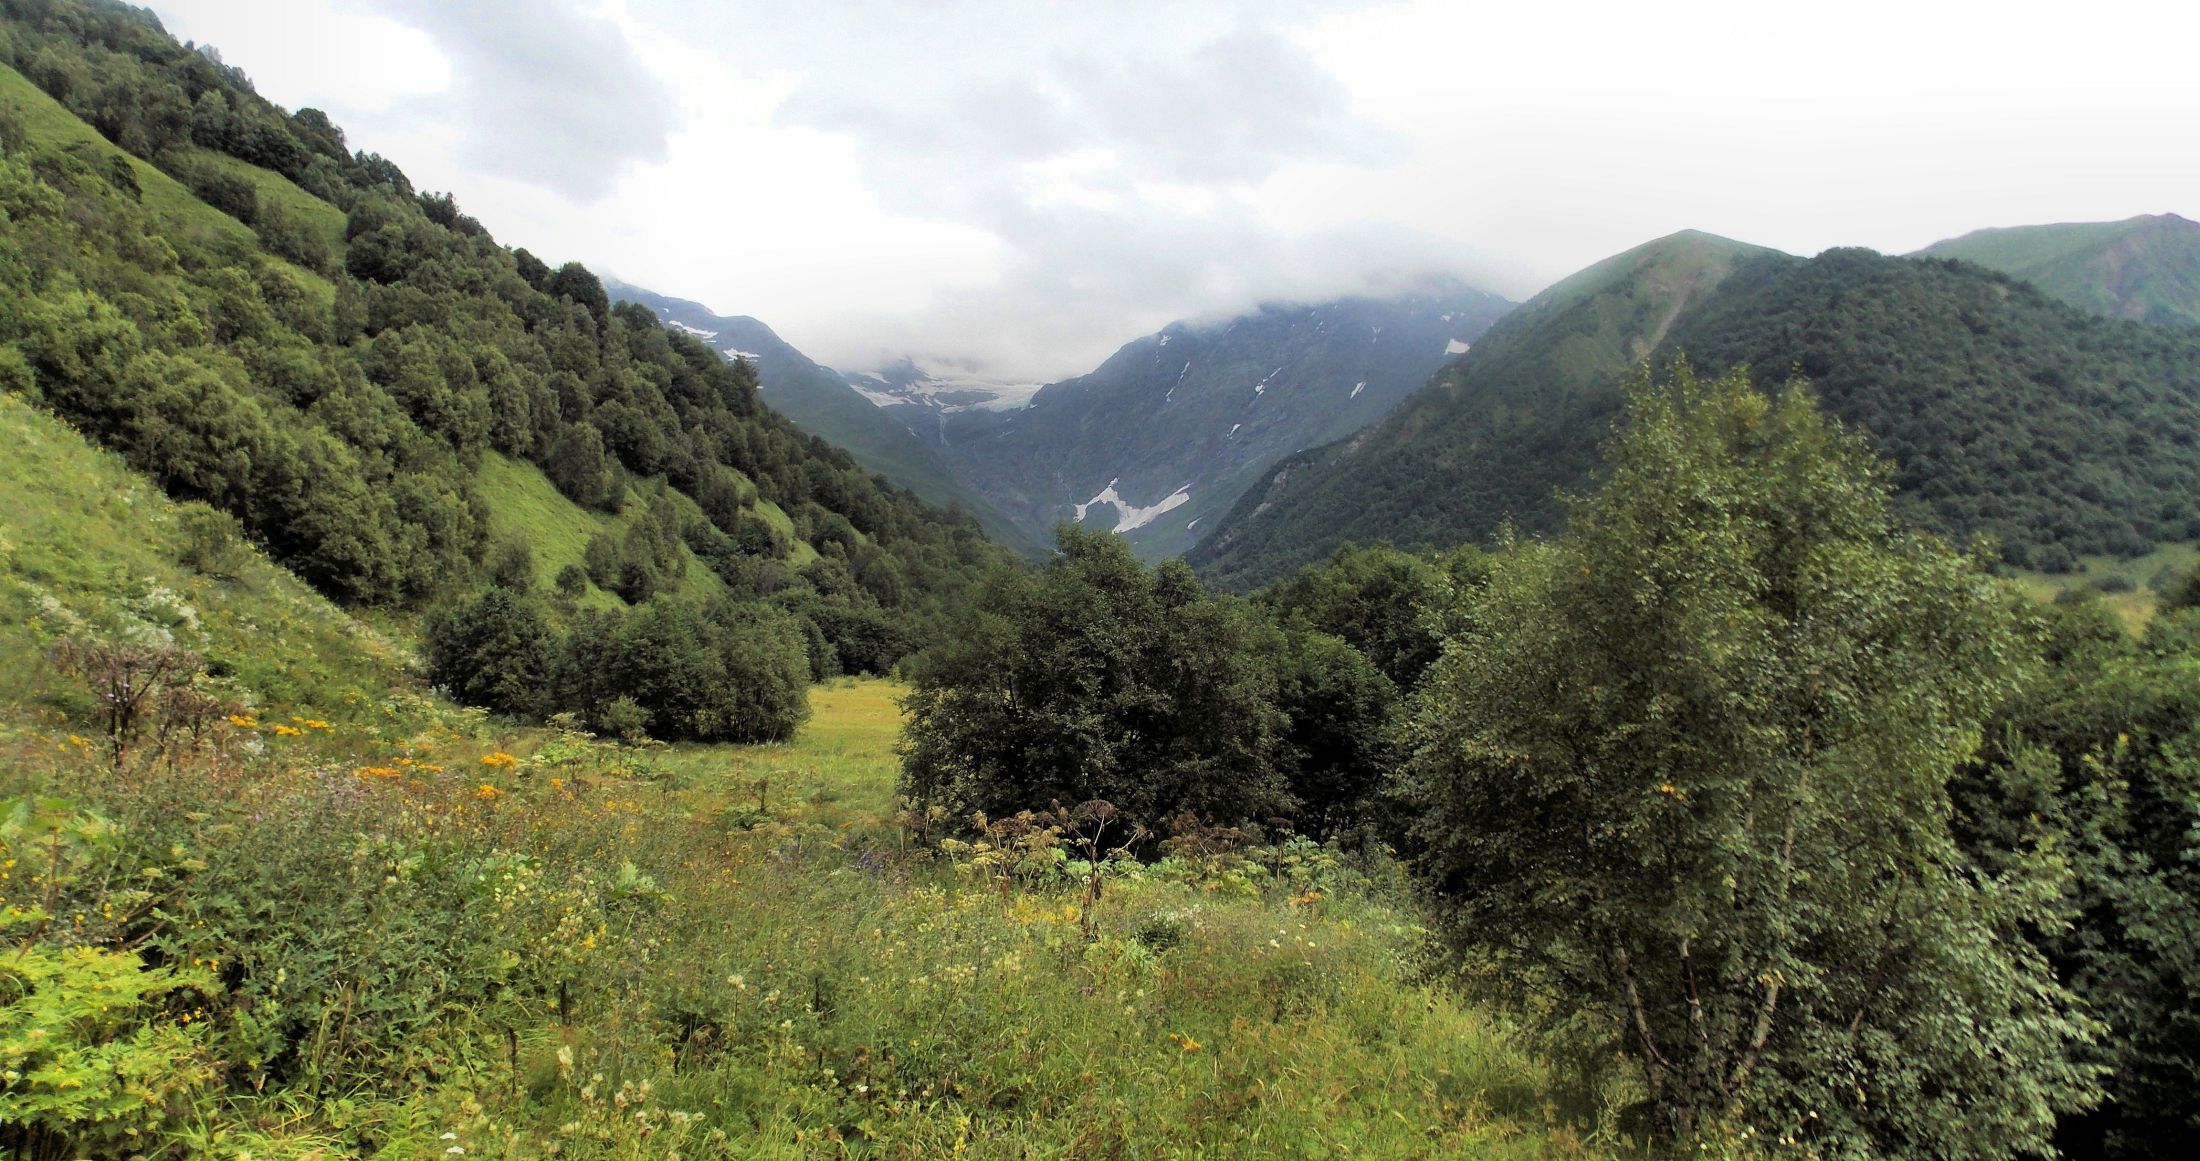 Hiking up the Tskhenistskali valley